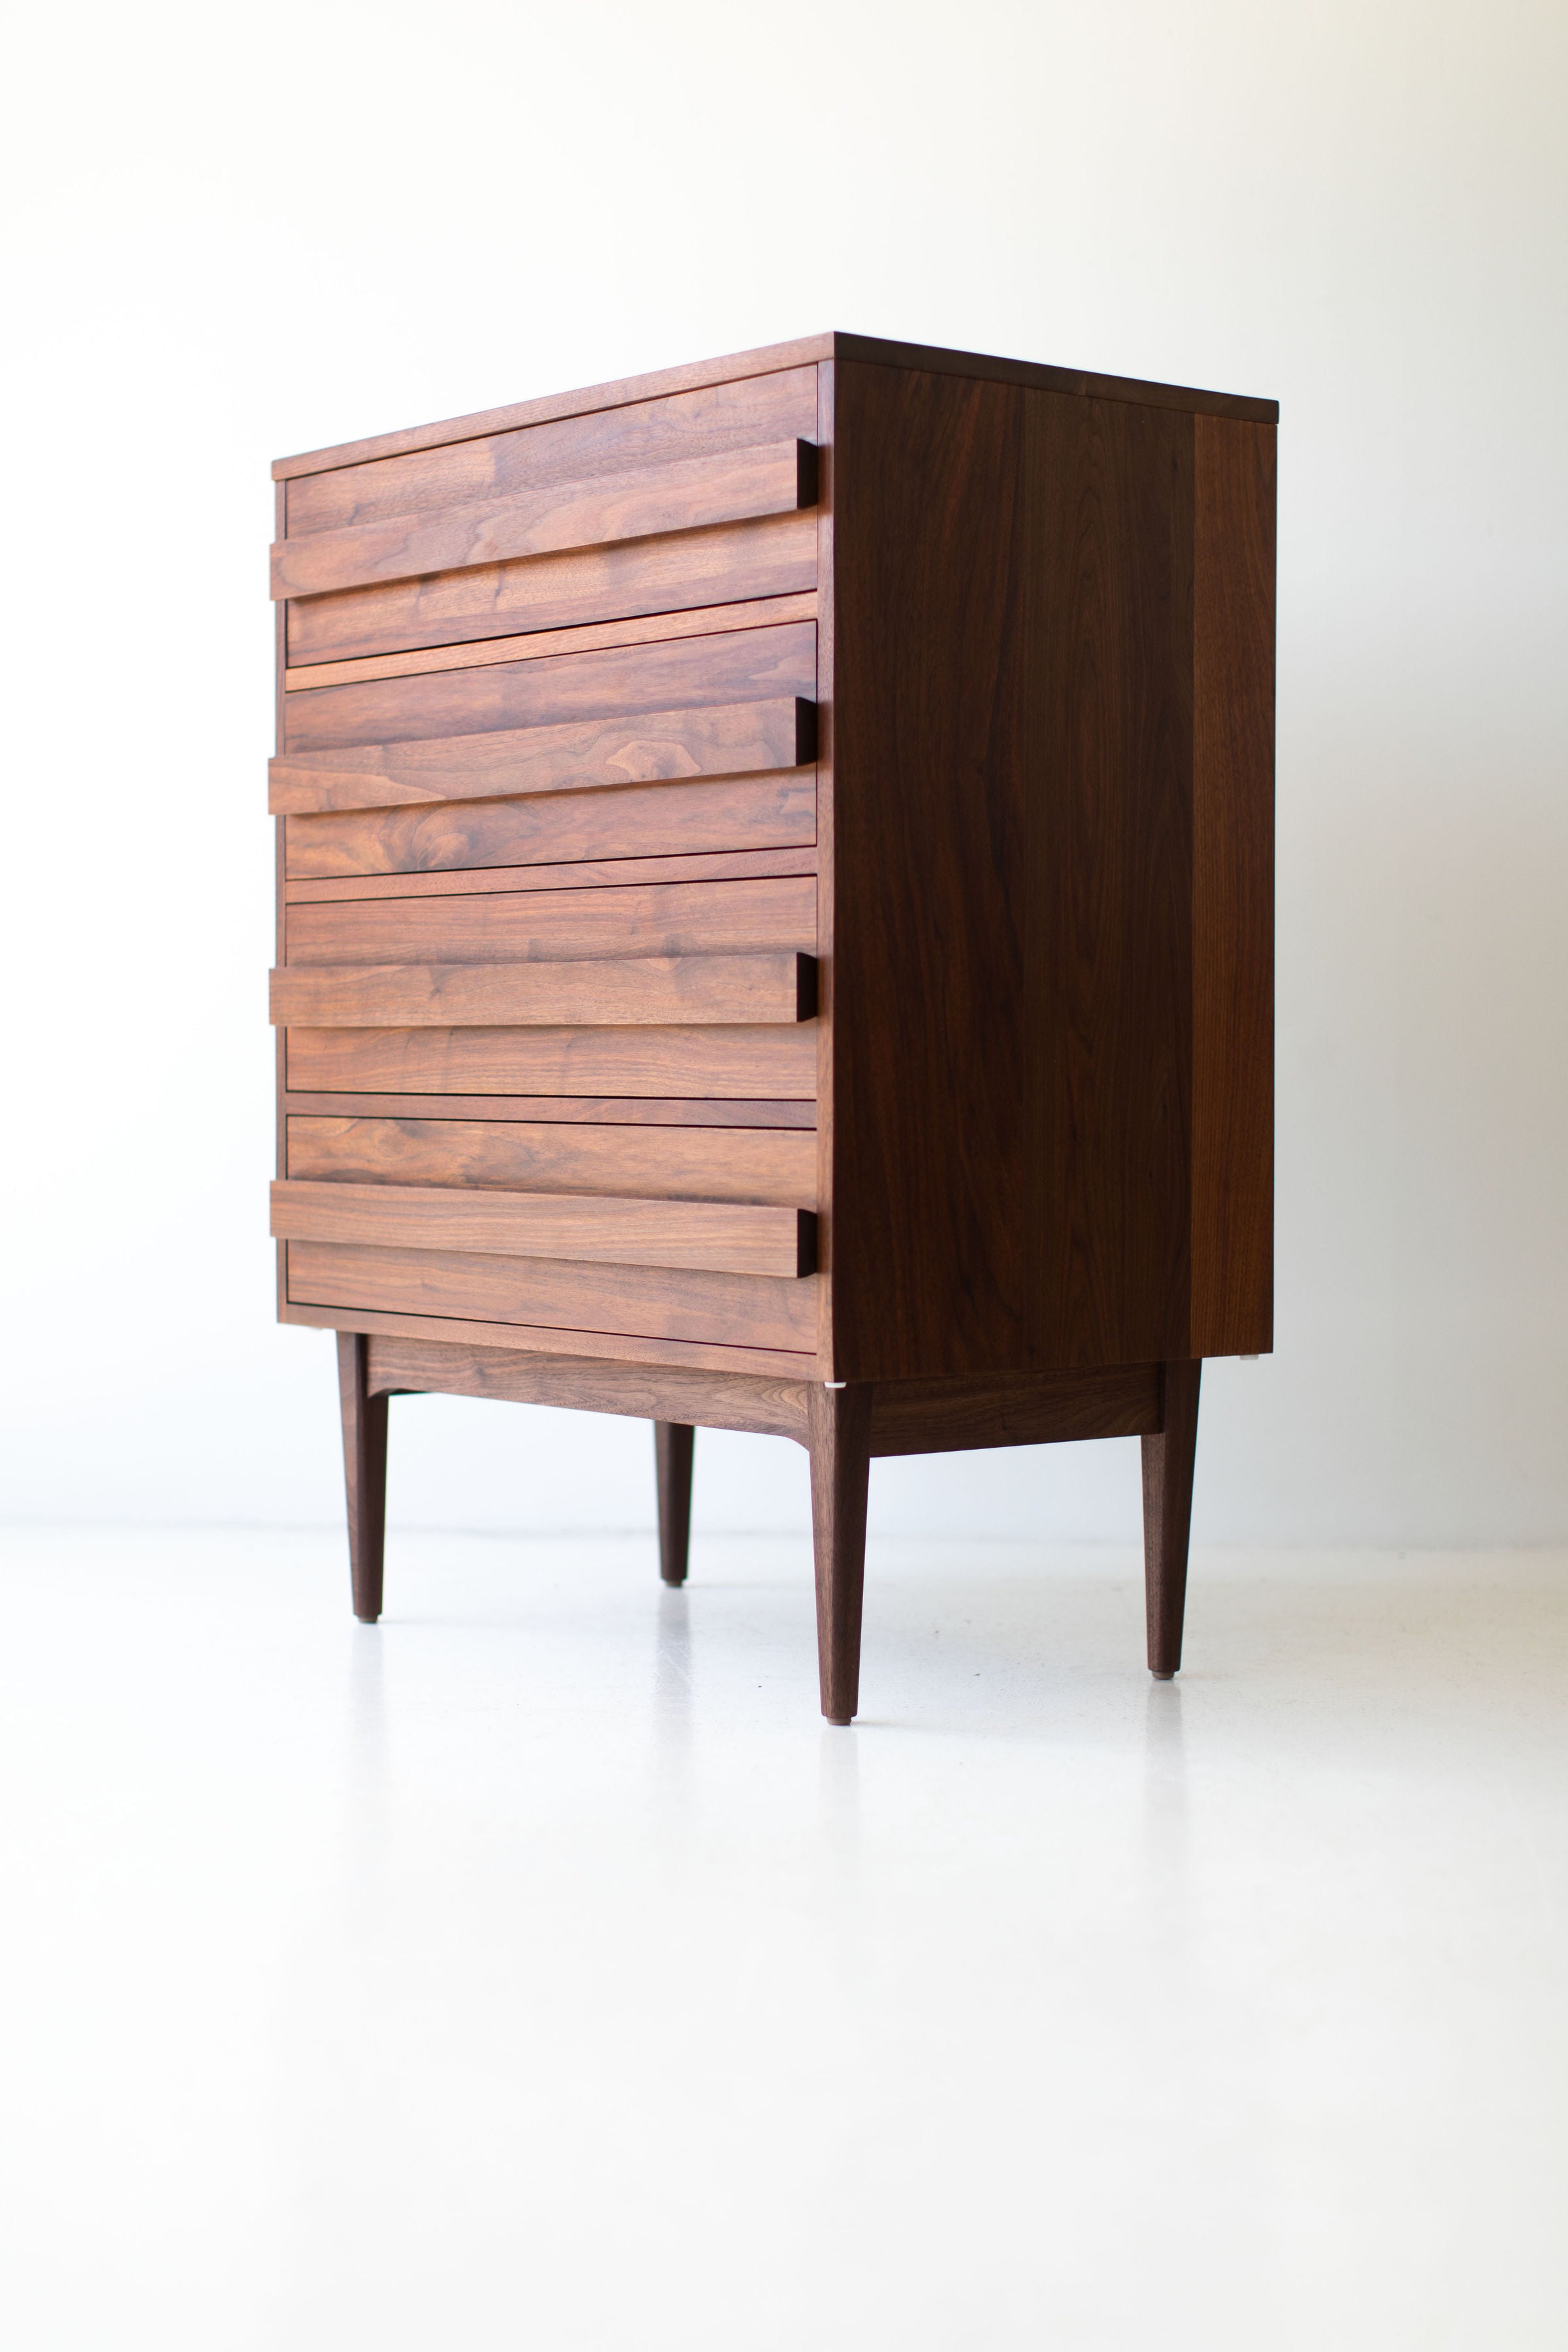 Modern Dresser - 0916 - Version 2